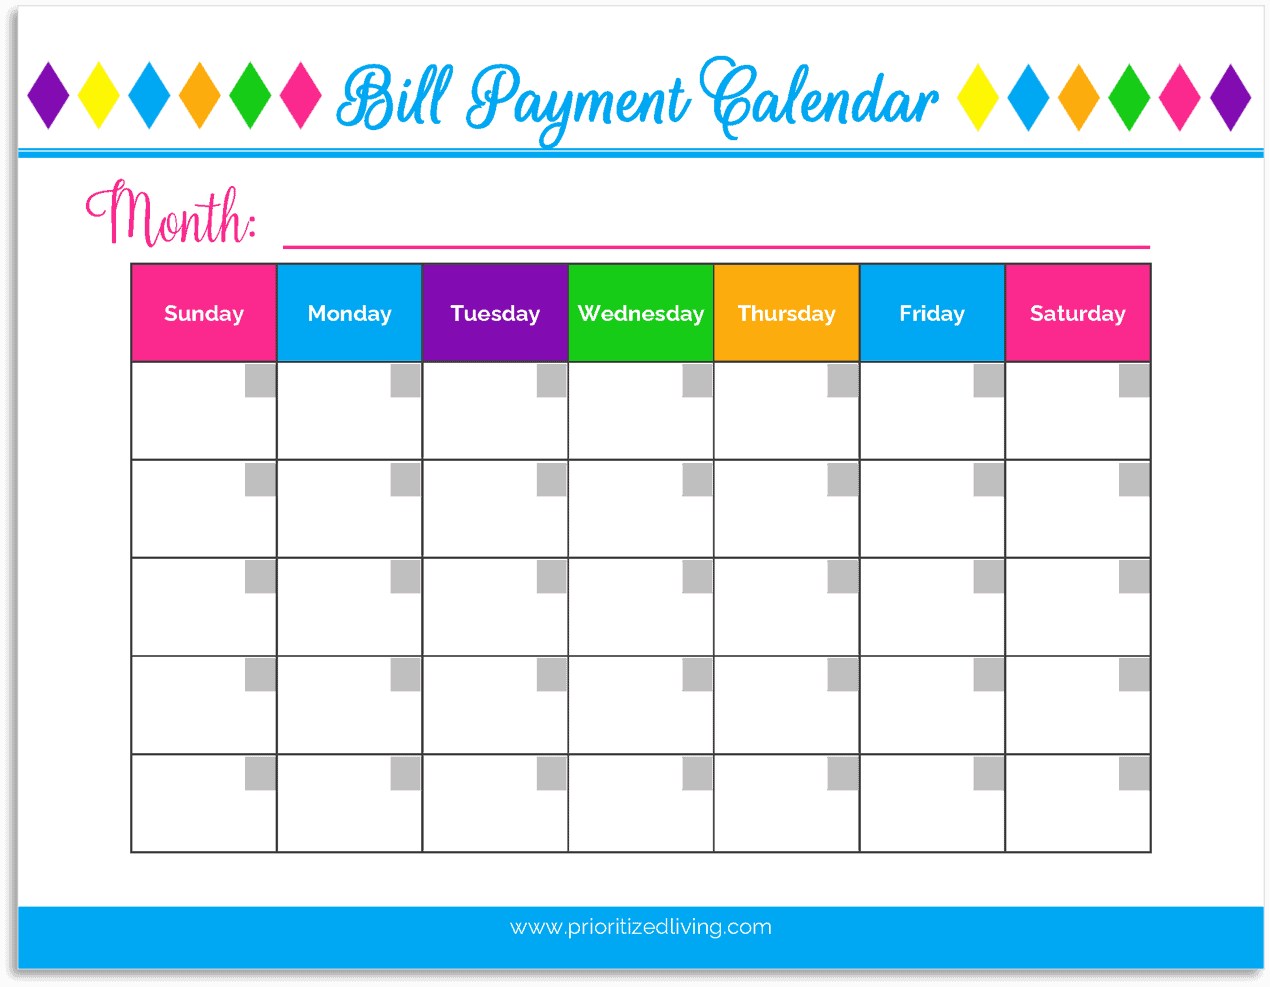 Bill Payment Calendar in My Budget Binder